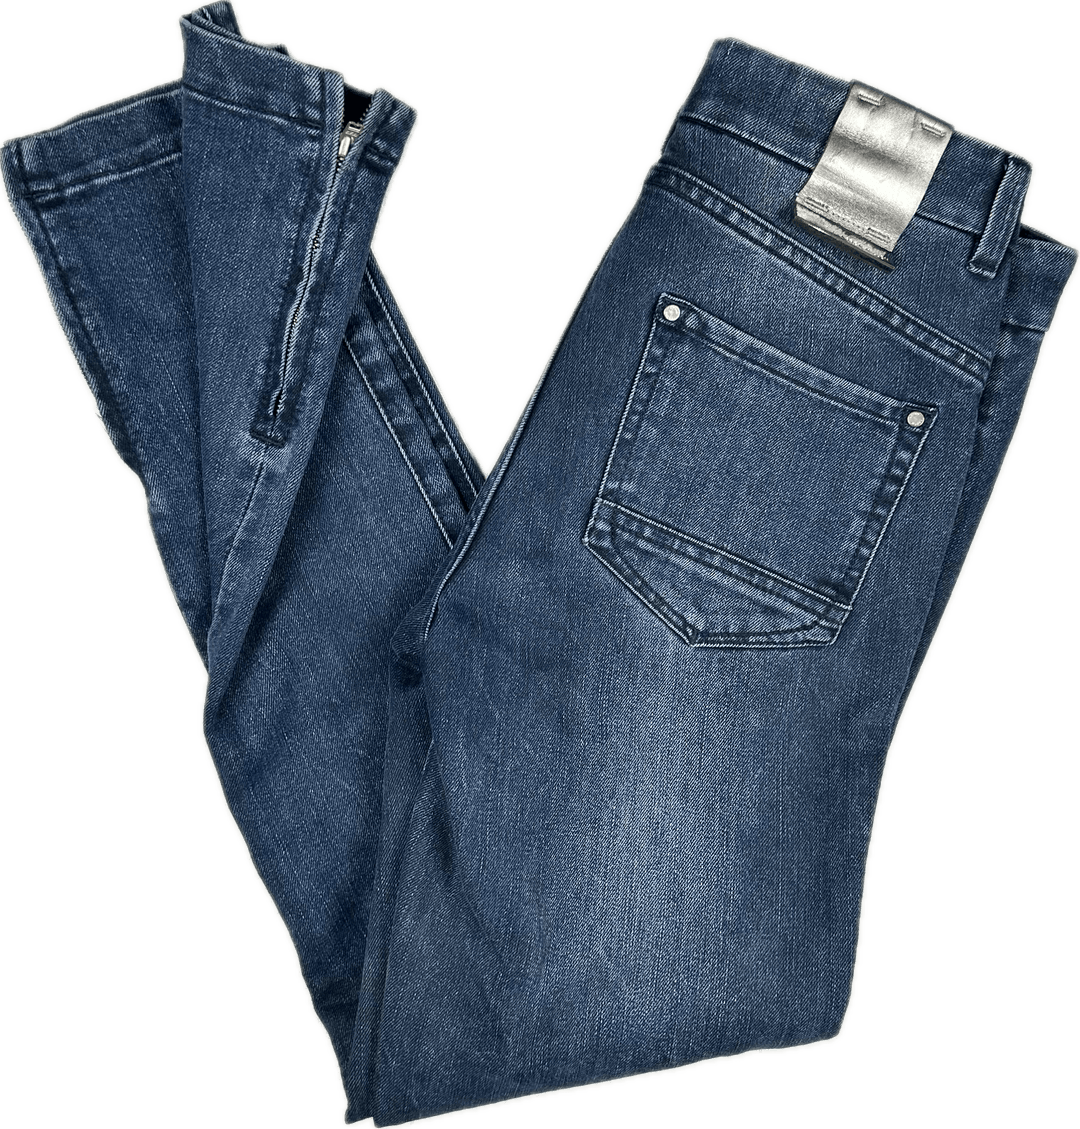 Karen Millen Ankle Zip Skinny Blue Jeans- Size 8 - Jean Pool